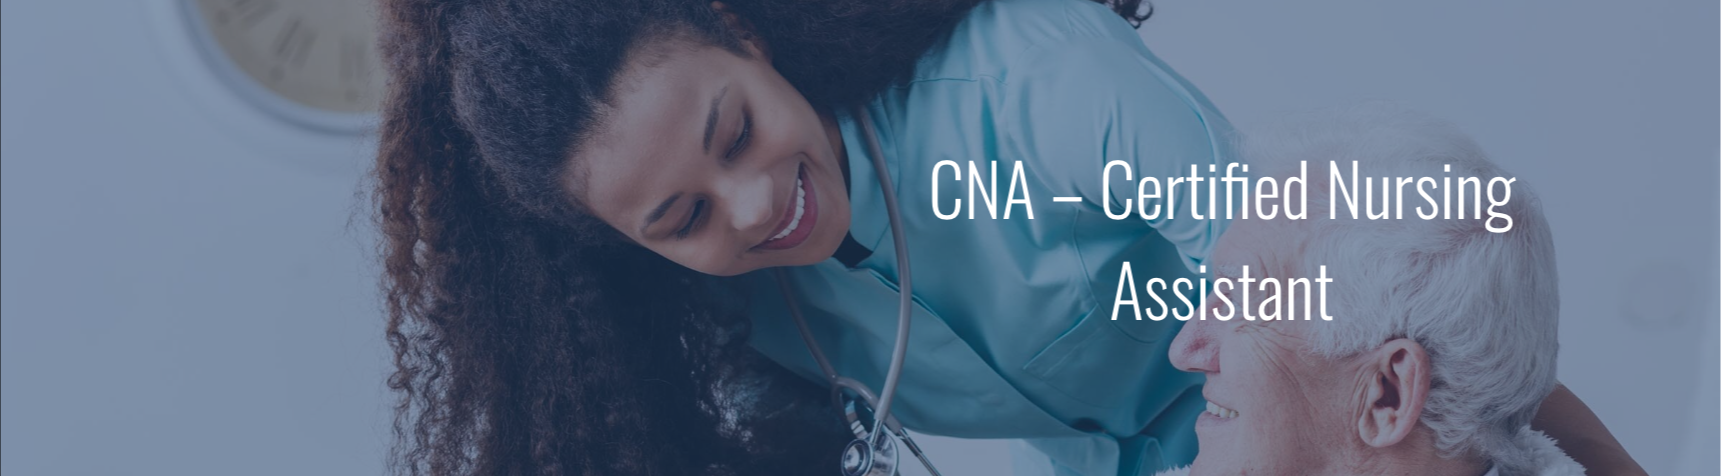 CNA – Certified Nursing Assistant